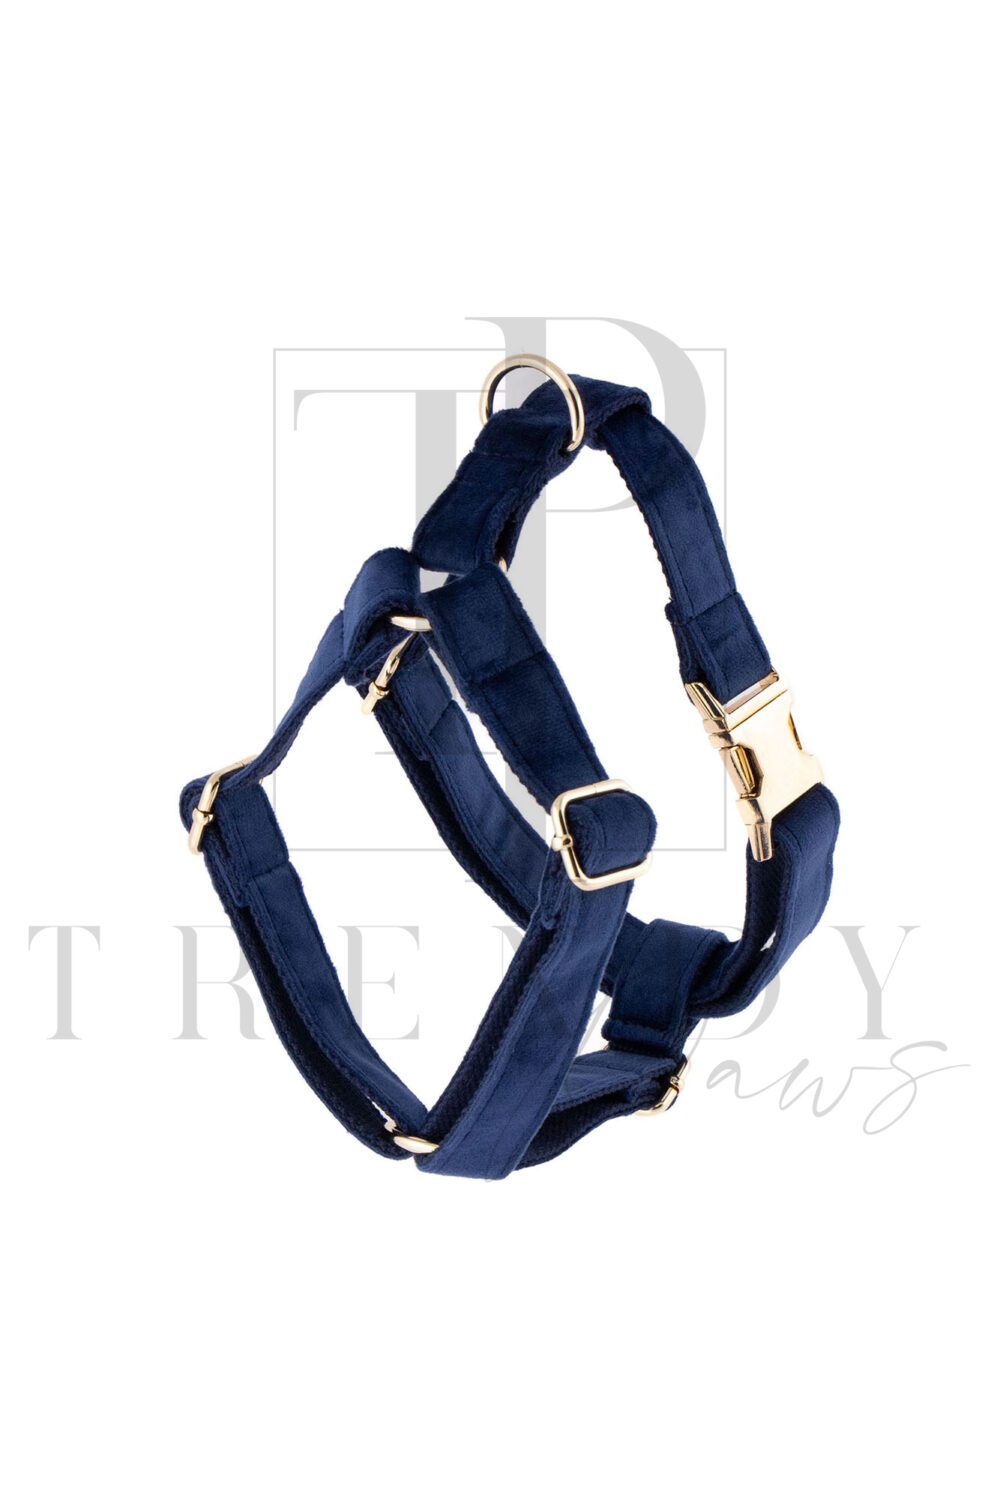 Blue velvet soft dog harnesses harness